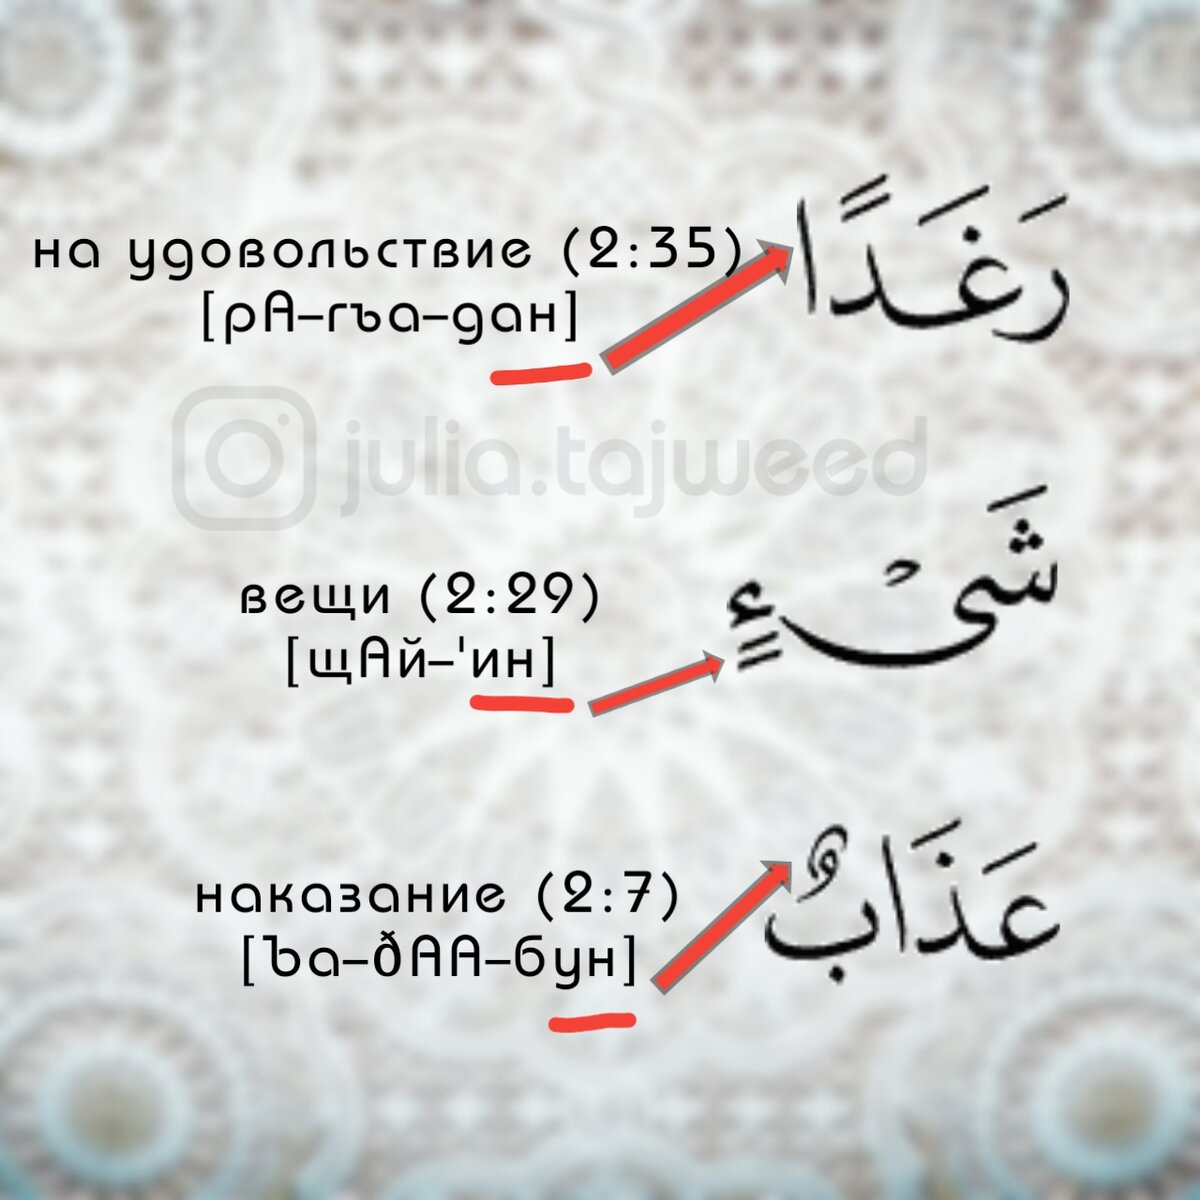 перевод с арабского на русский по фотографии